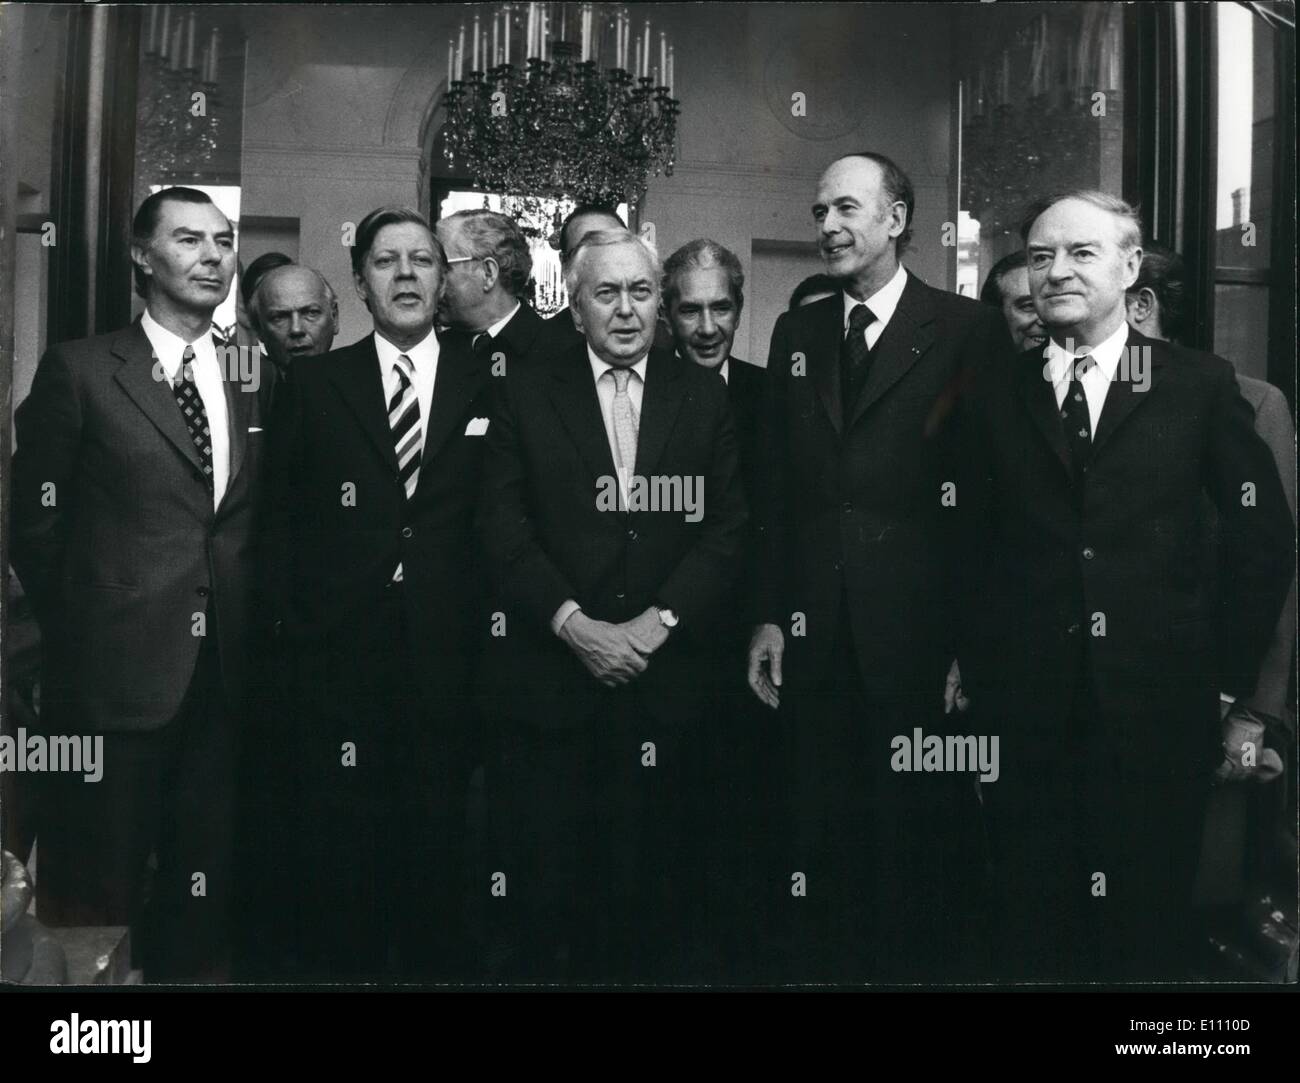 Il 12 Dic. 1974 - Il Consiglio ha deciso di riunirsi tre volte l'anno. Nella foto sui passi dell'Elysee Palace, da sinistra a destra: Foto Stock